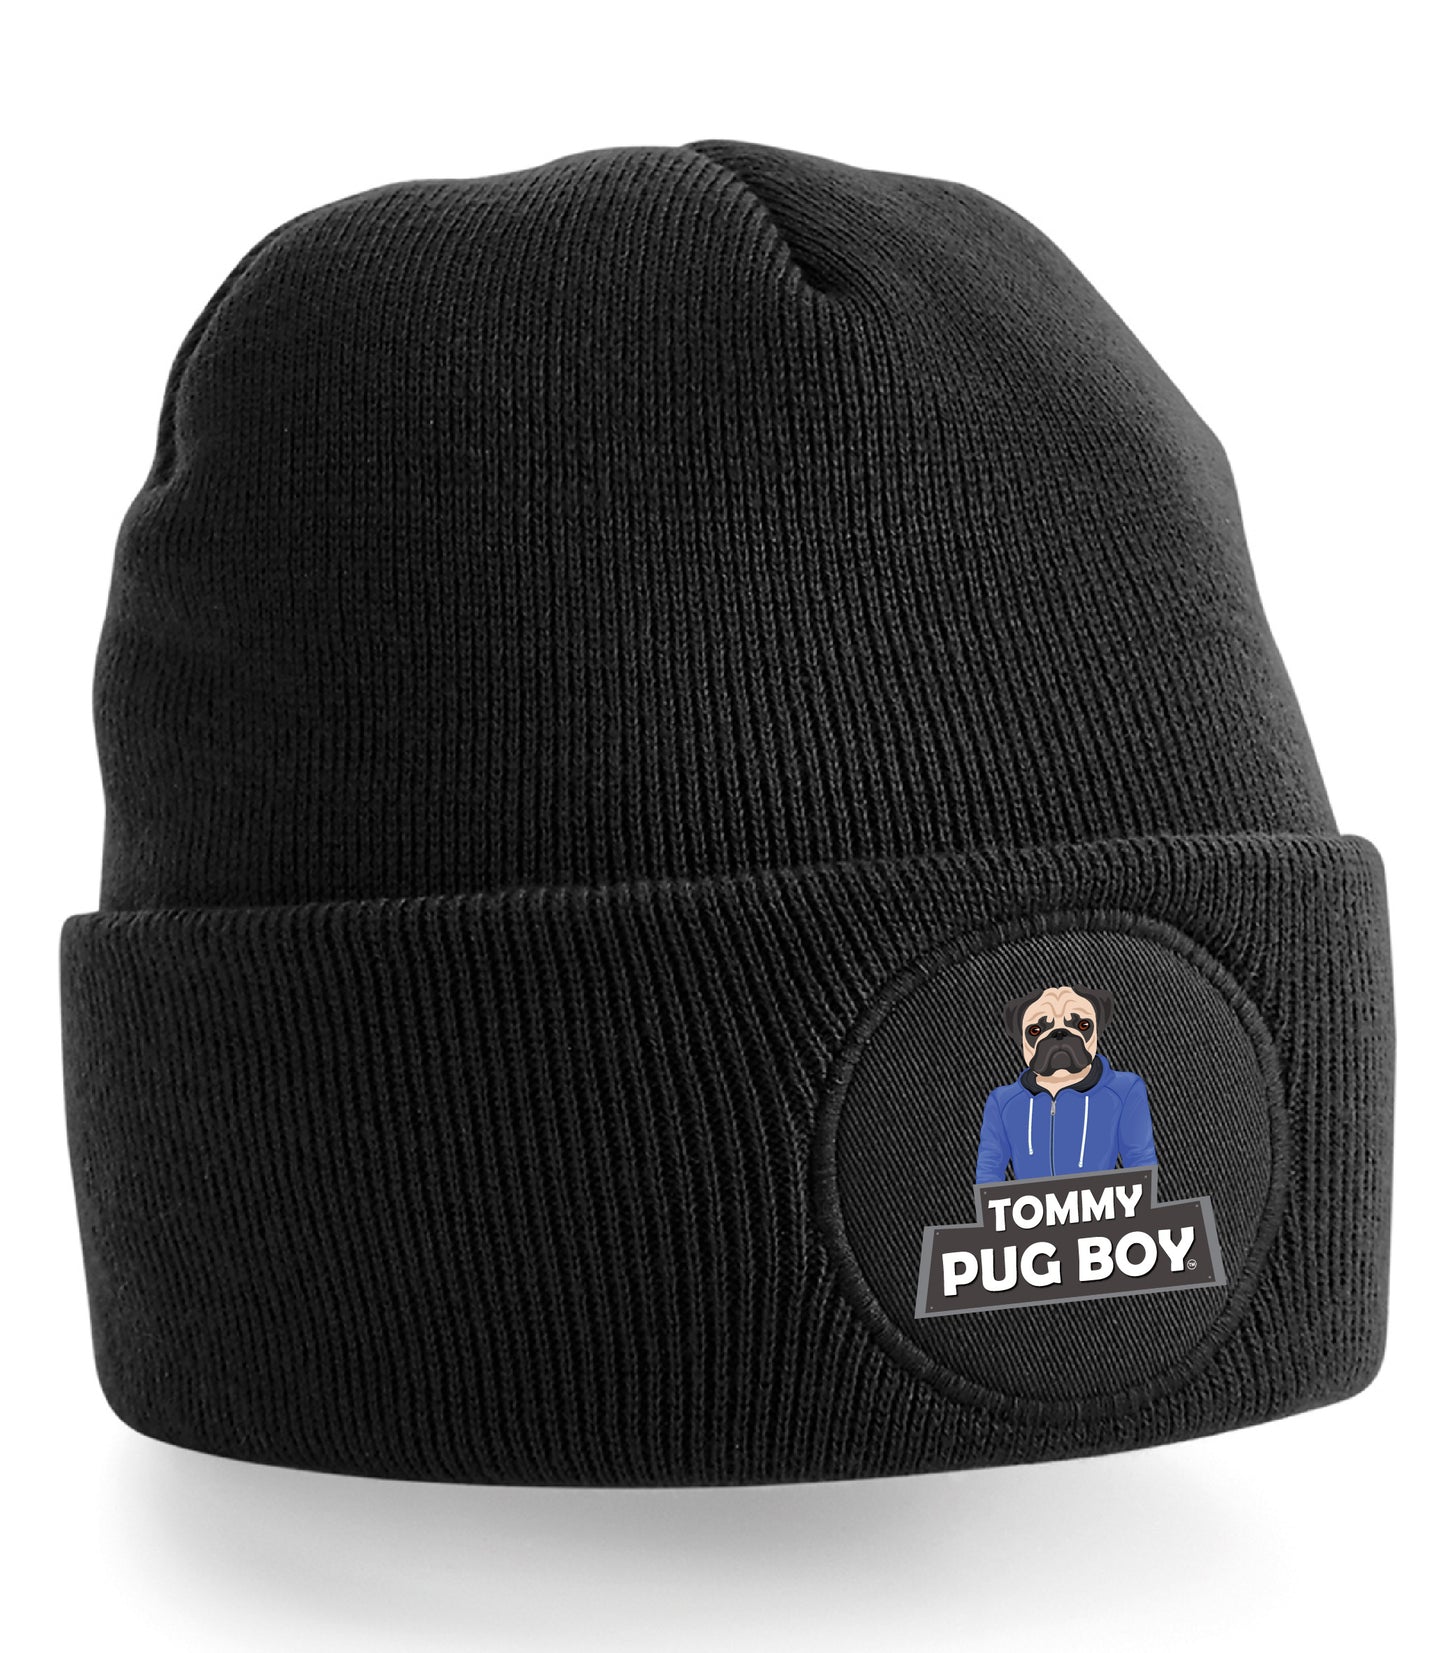 Tommy Pug Boy Beanie Hat